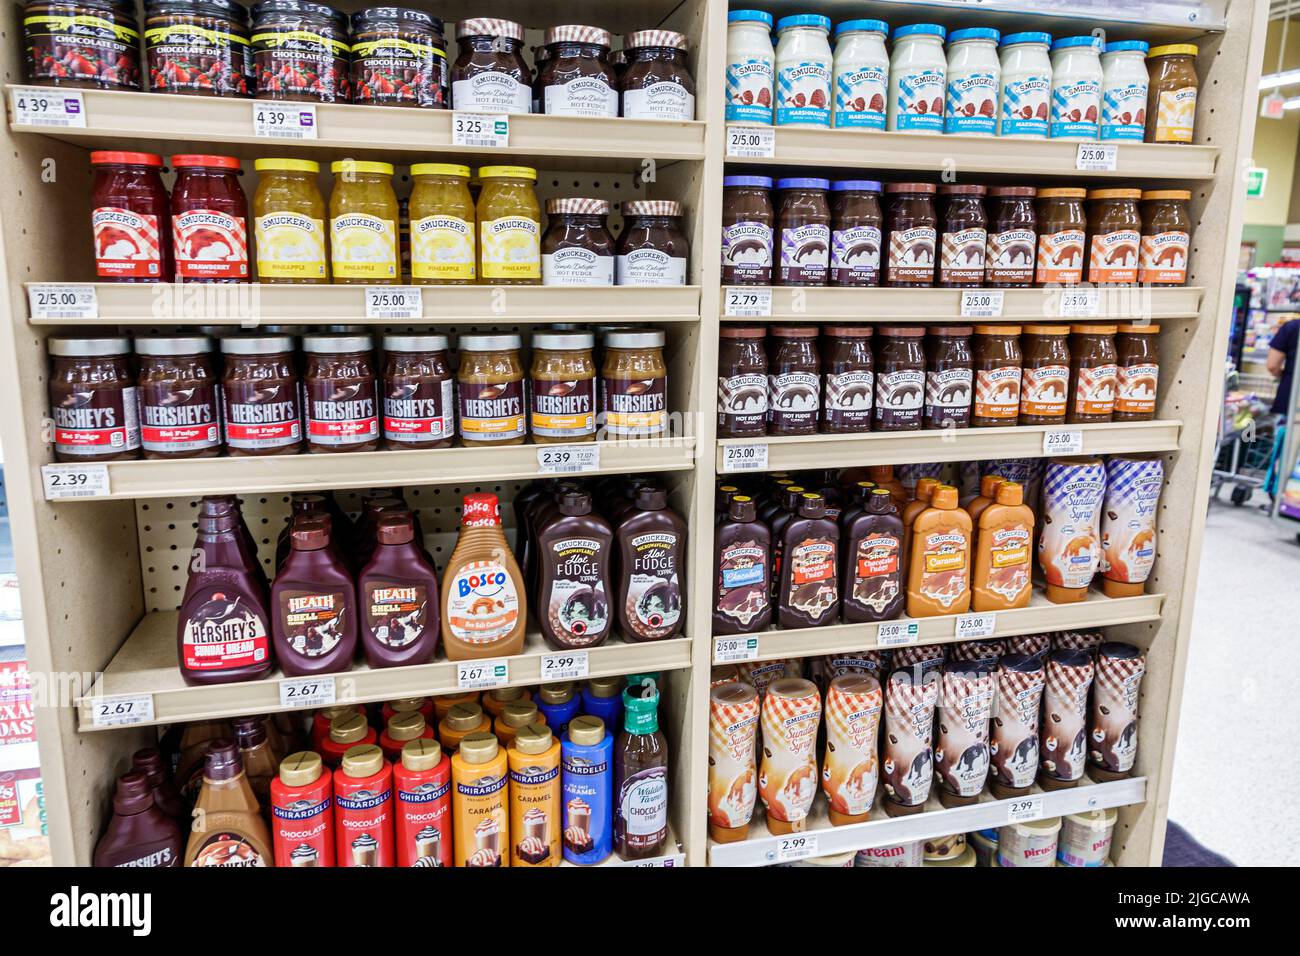 Miami Beach Florida, Publix tienda de comestibles supermercado alimentos interior interior, exhibición estantes venta estante jarabe de chocolate Hershey's Smucker's. Foto de stock